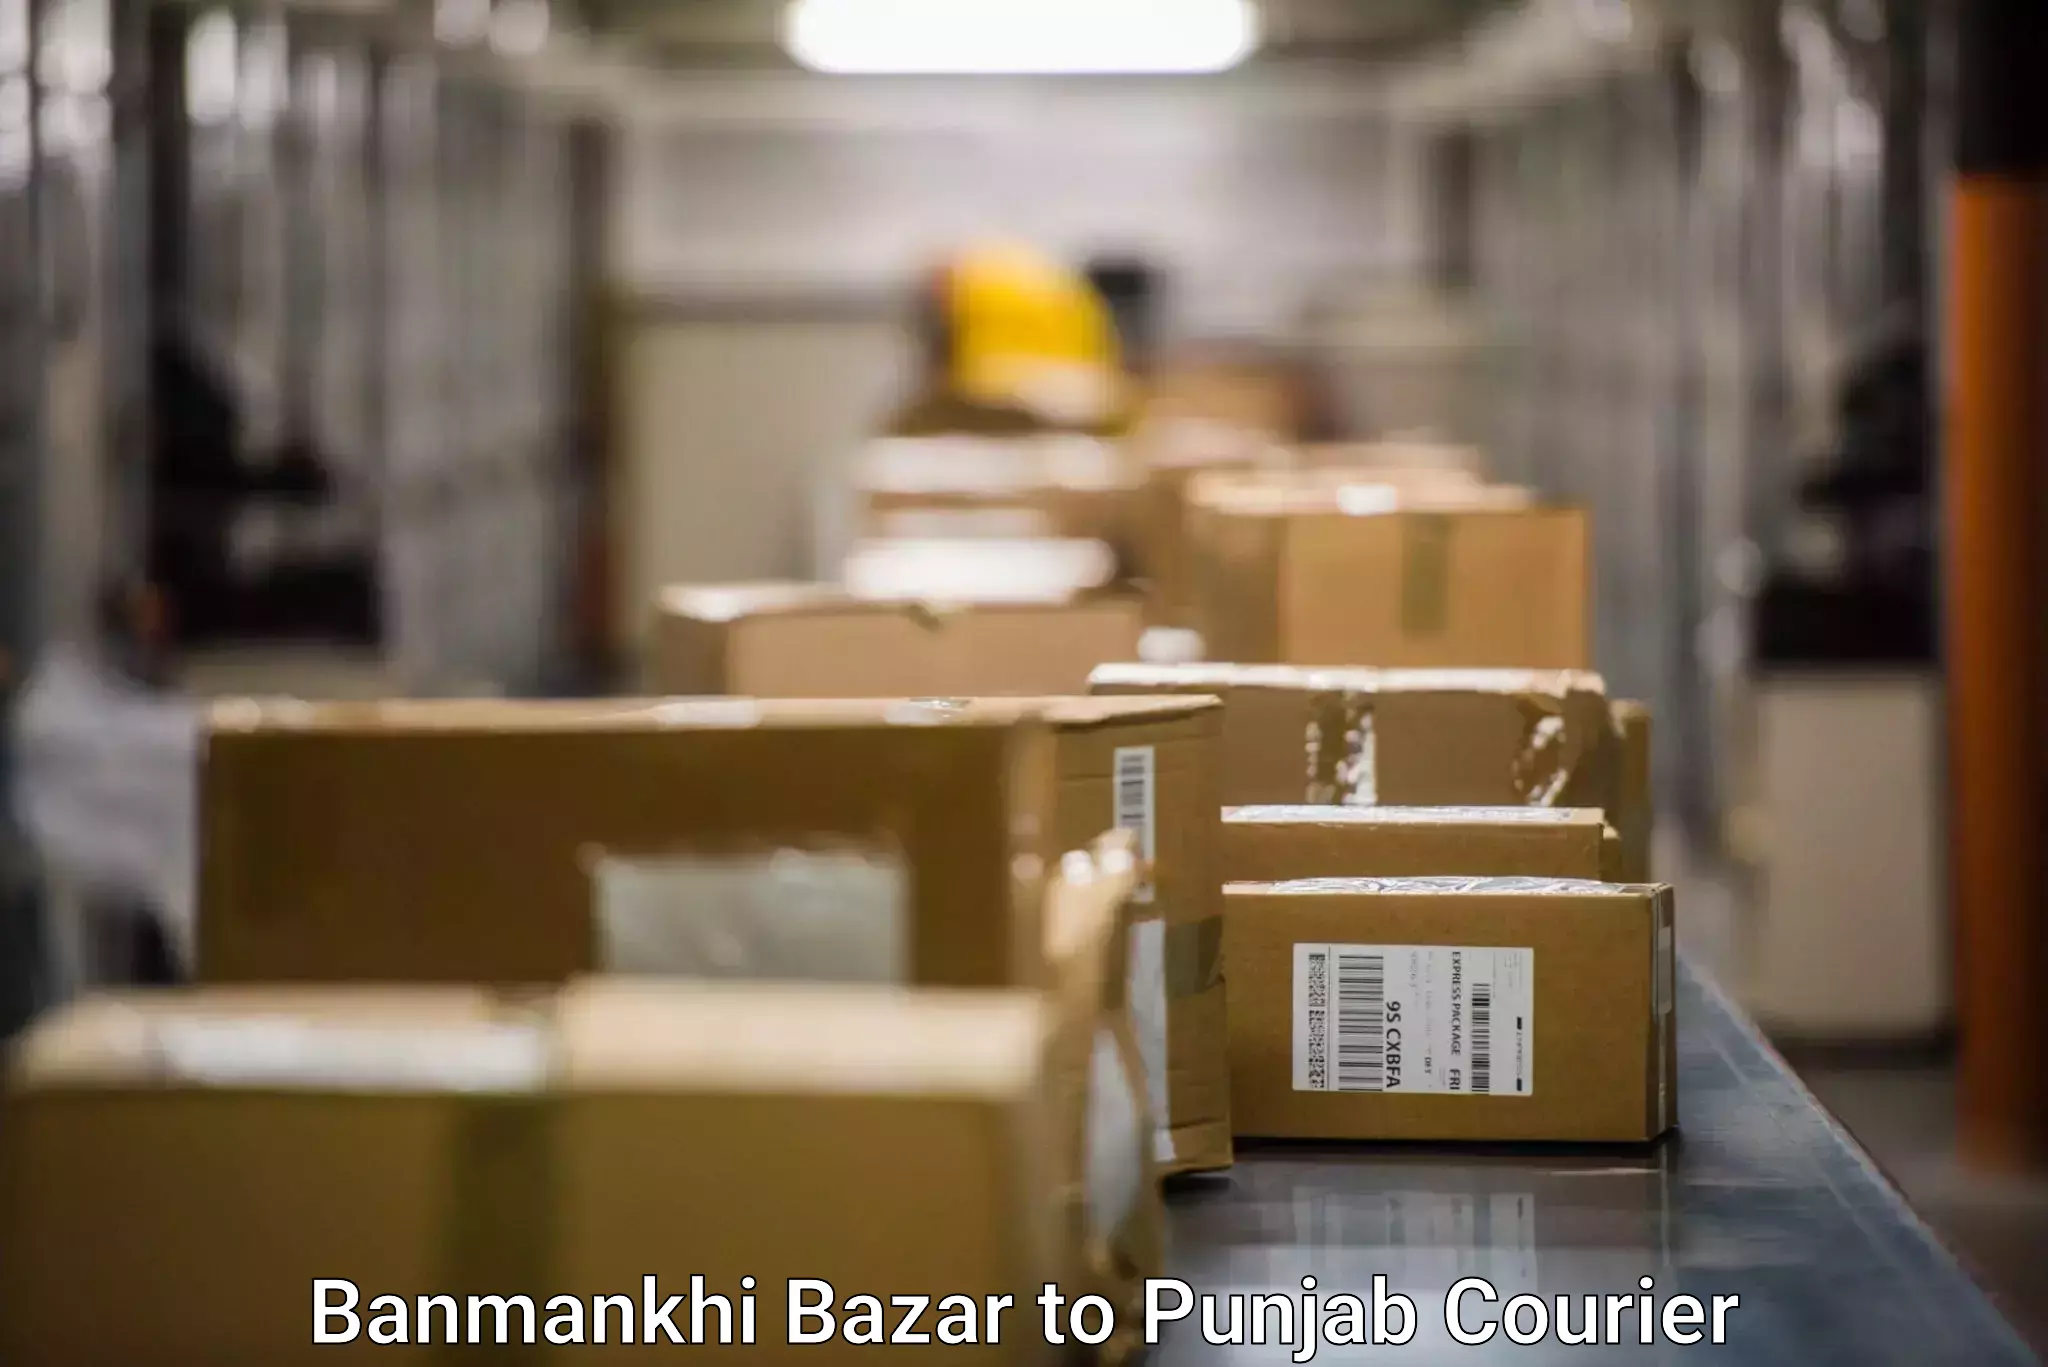 Advanced freight services Banmankhi Bazar to Punjab